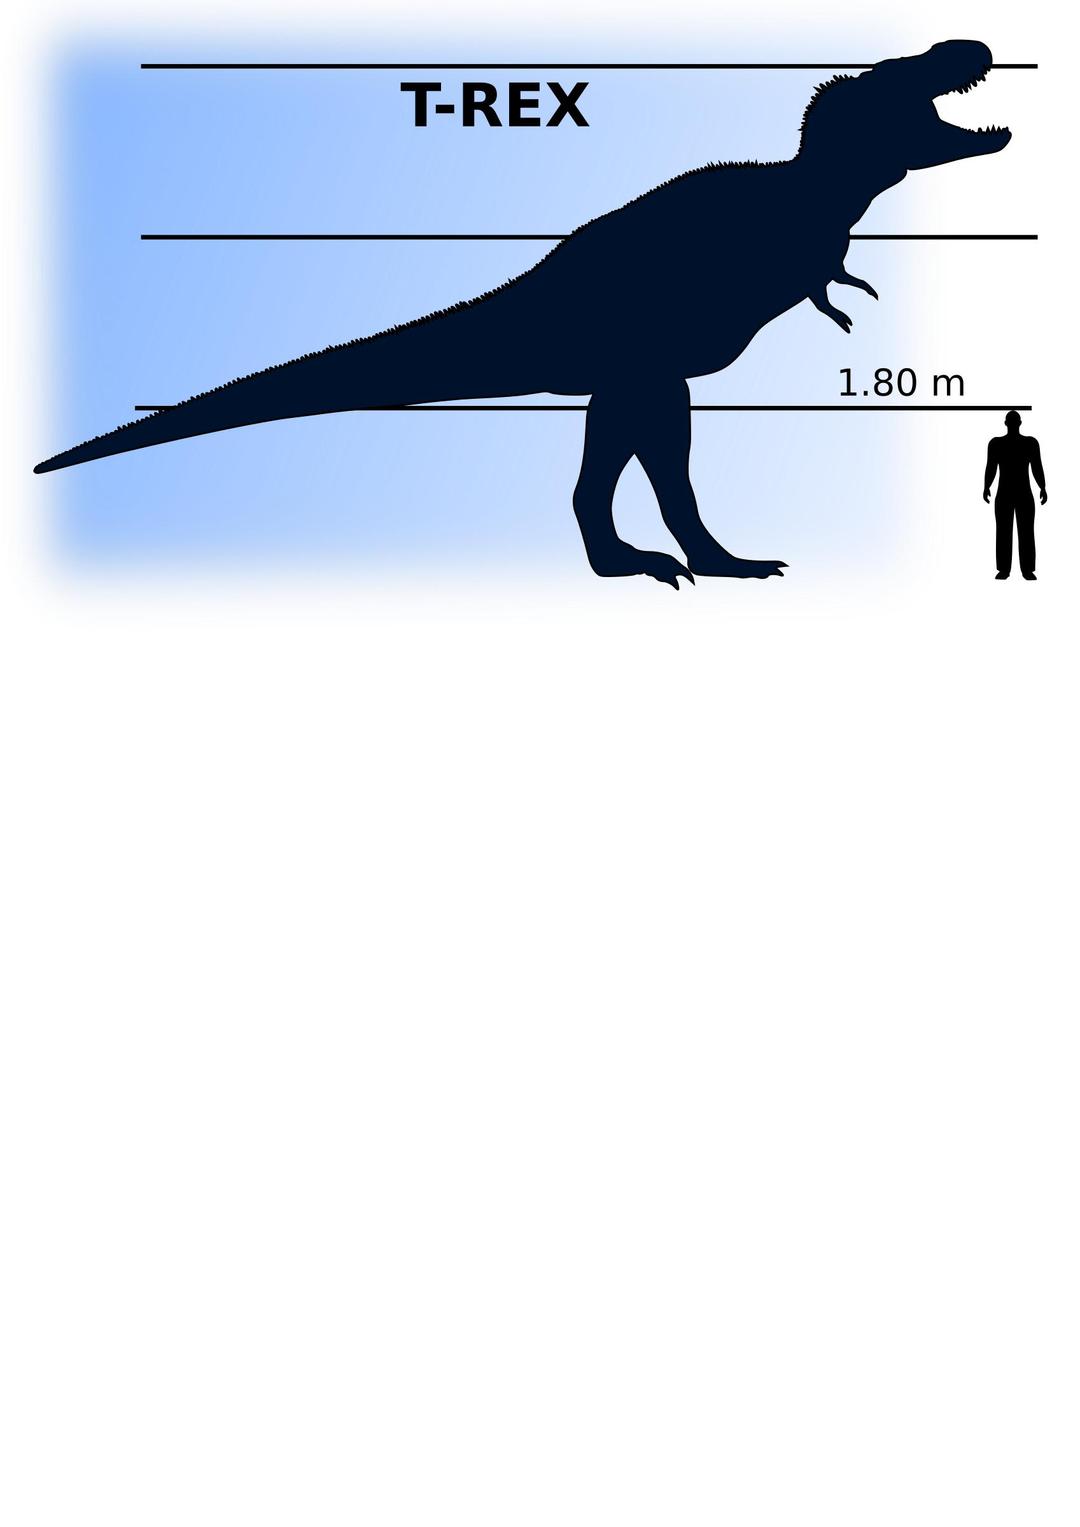 T-Rex vs man png transparent